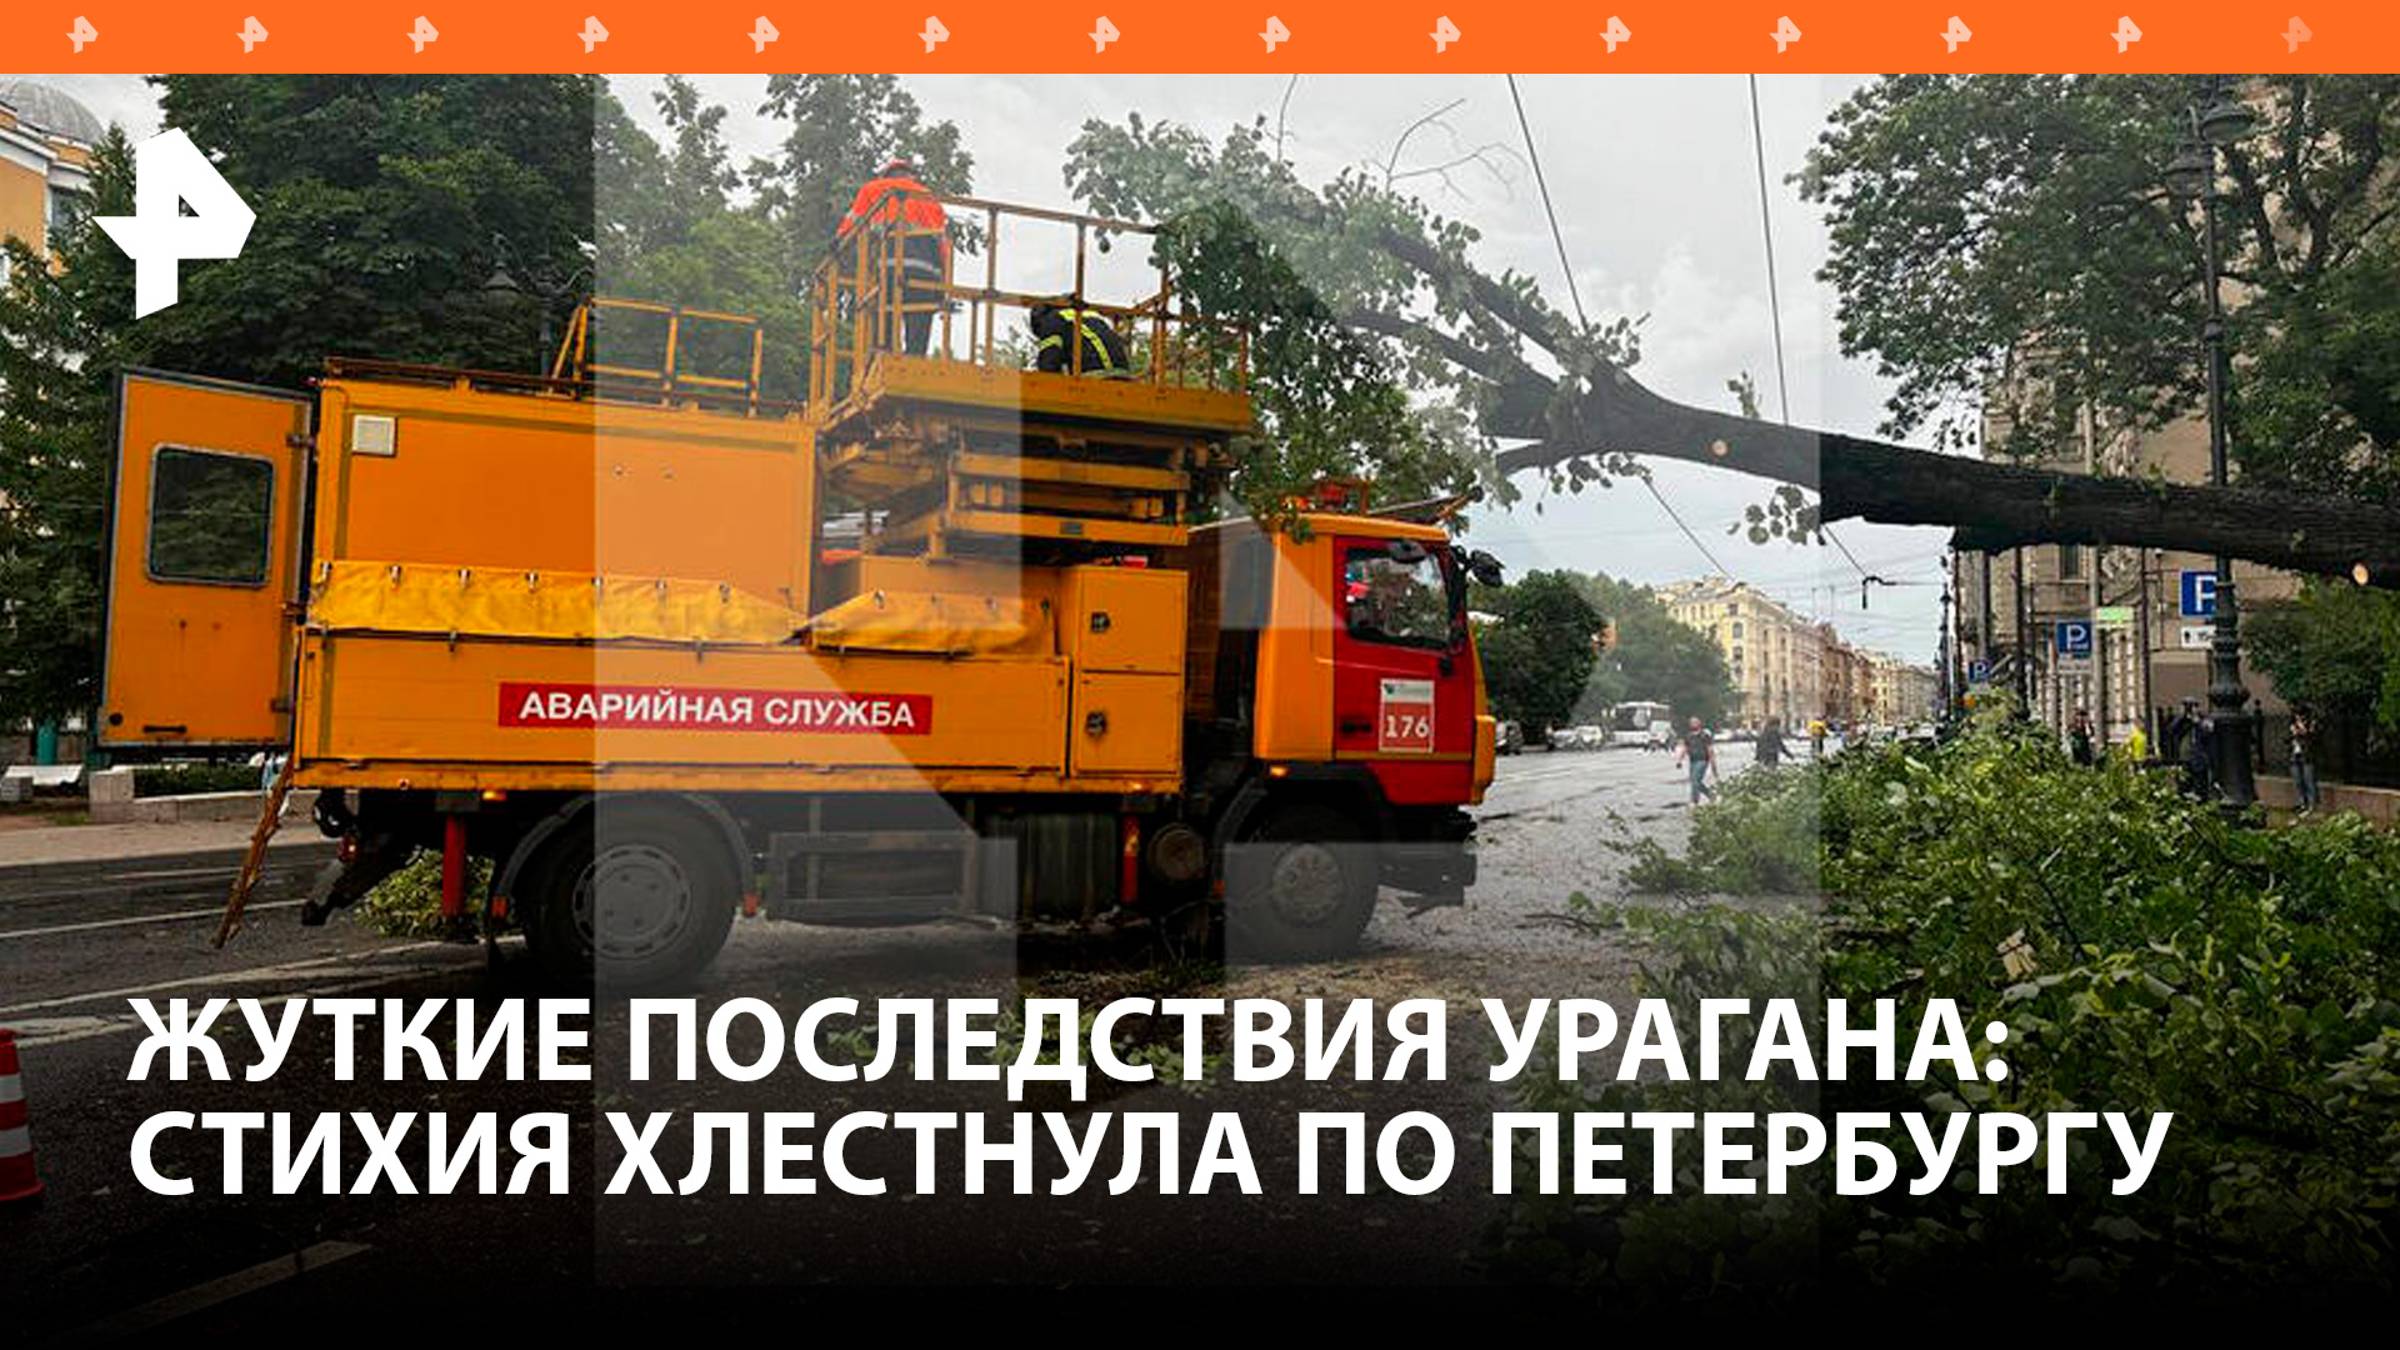 Обрушившийся на Петербург ураган оставил без света свыше 100 тыс. человек / РЕН Новости